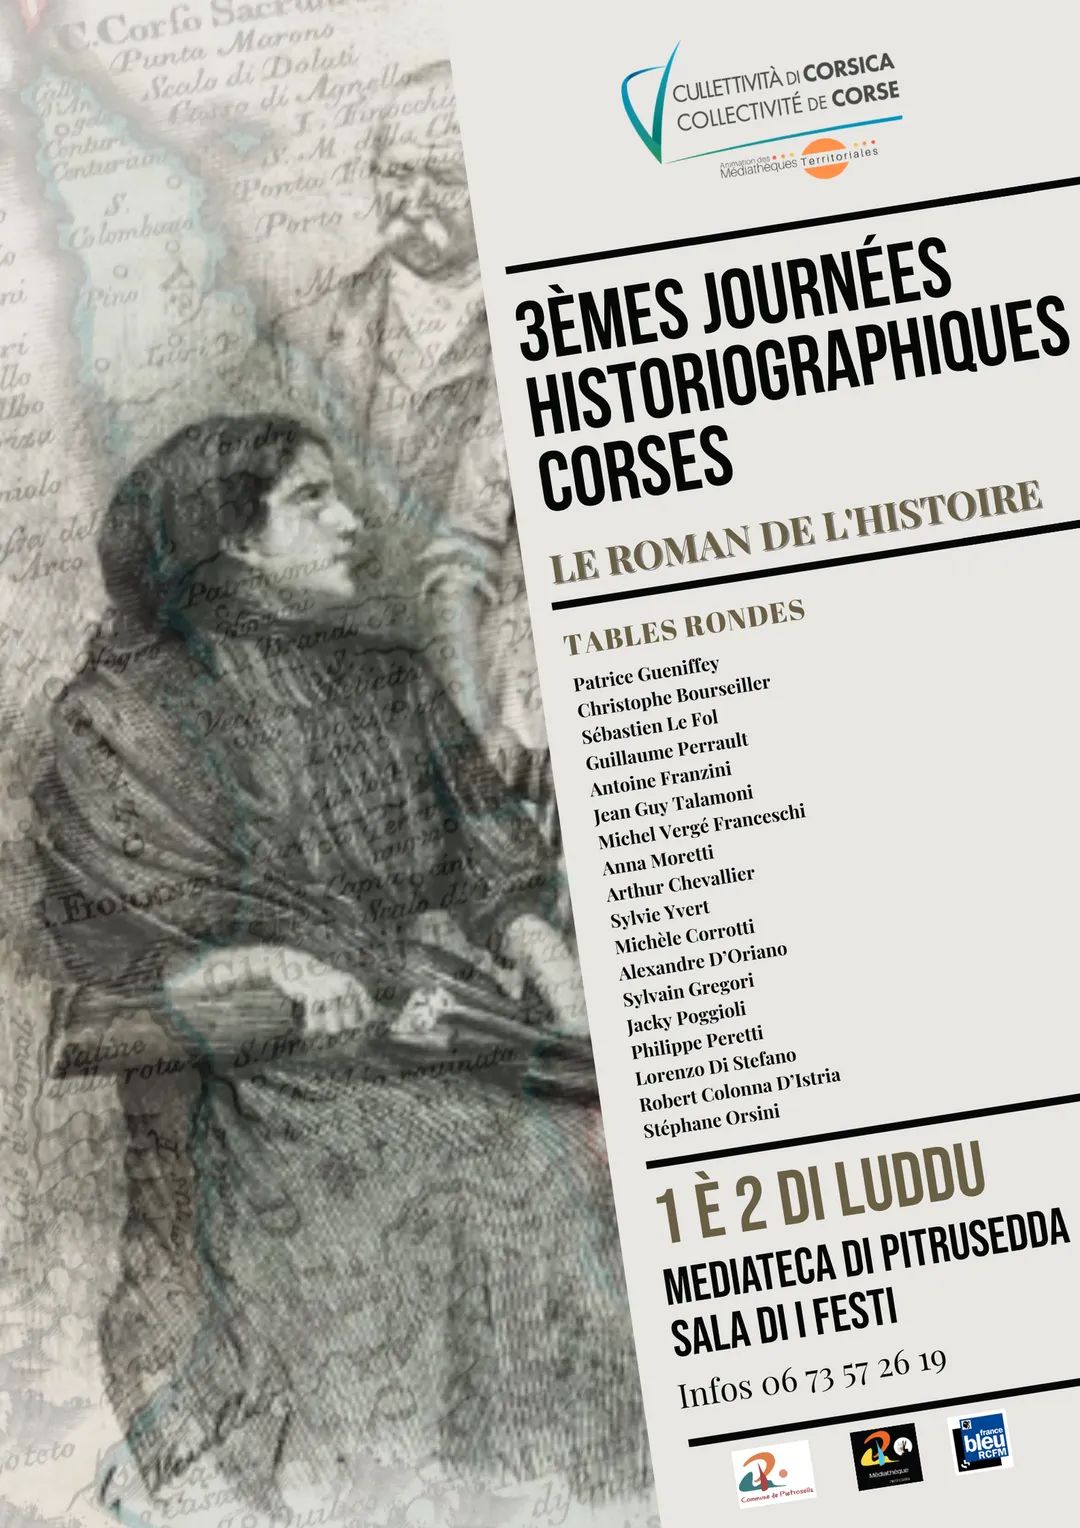 3e journées historiographiques corses - "Le roman de L'histoire" - Samedi 1er juillet et dimanche 2 juillet 2023